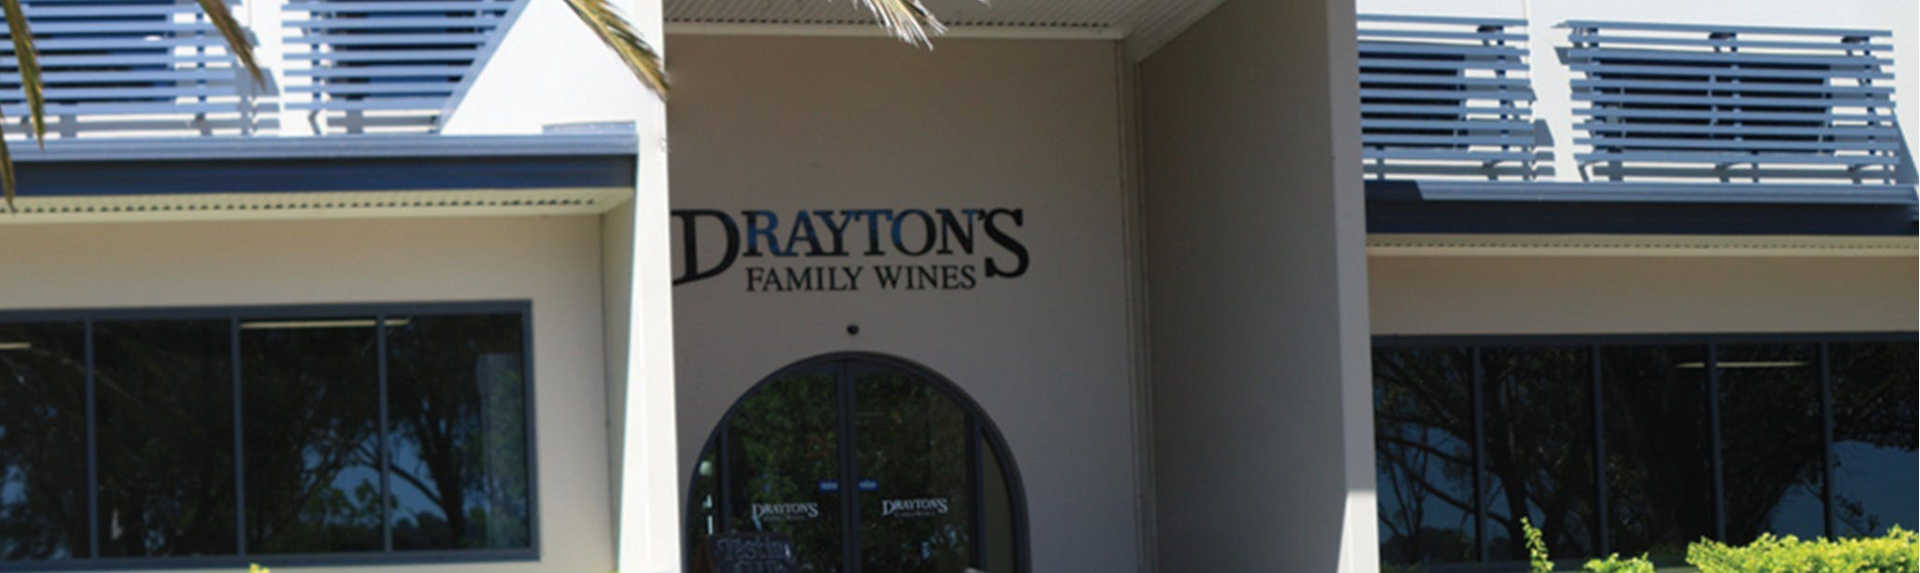 Drayton’s Family Wines